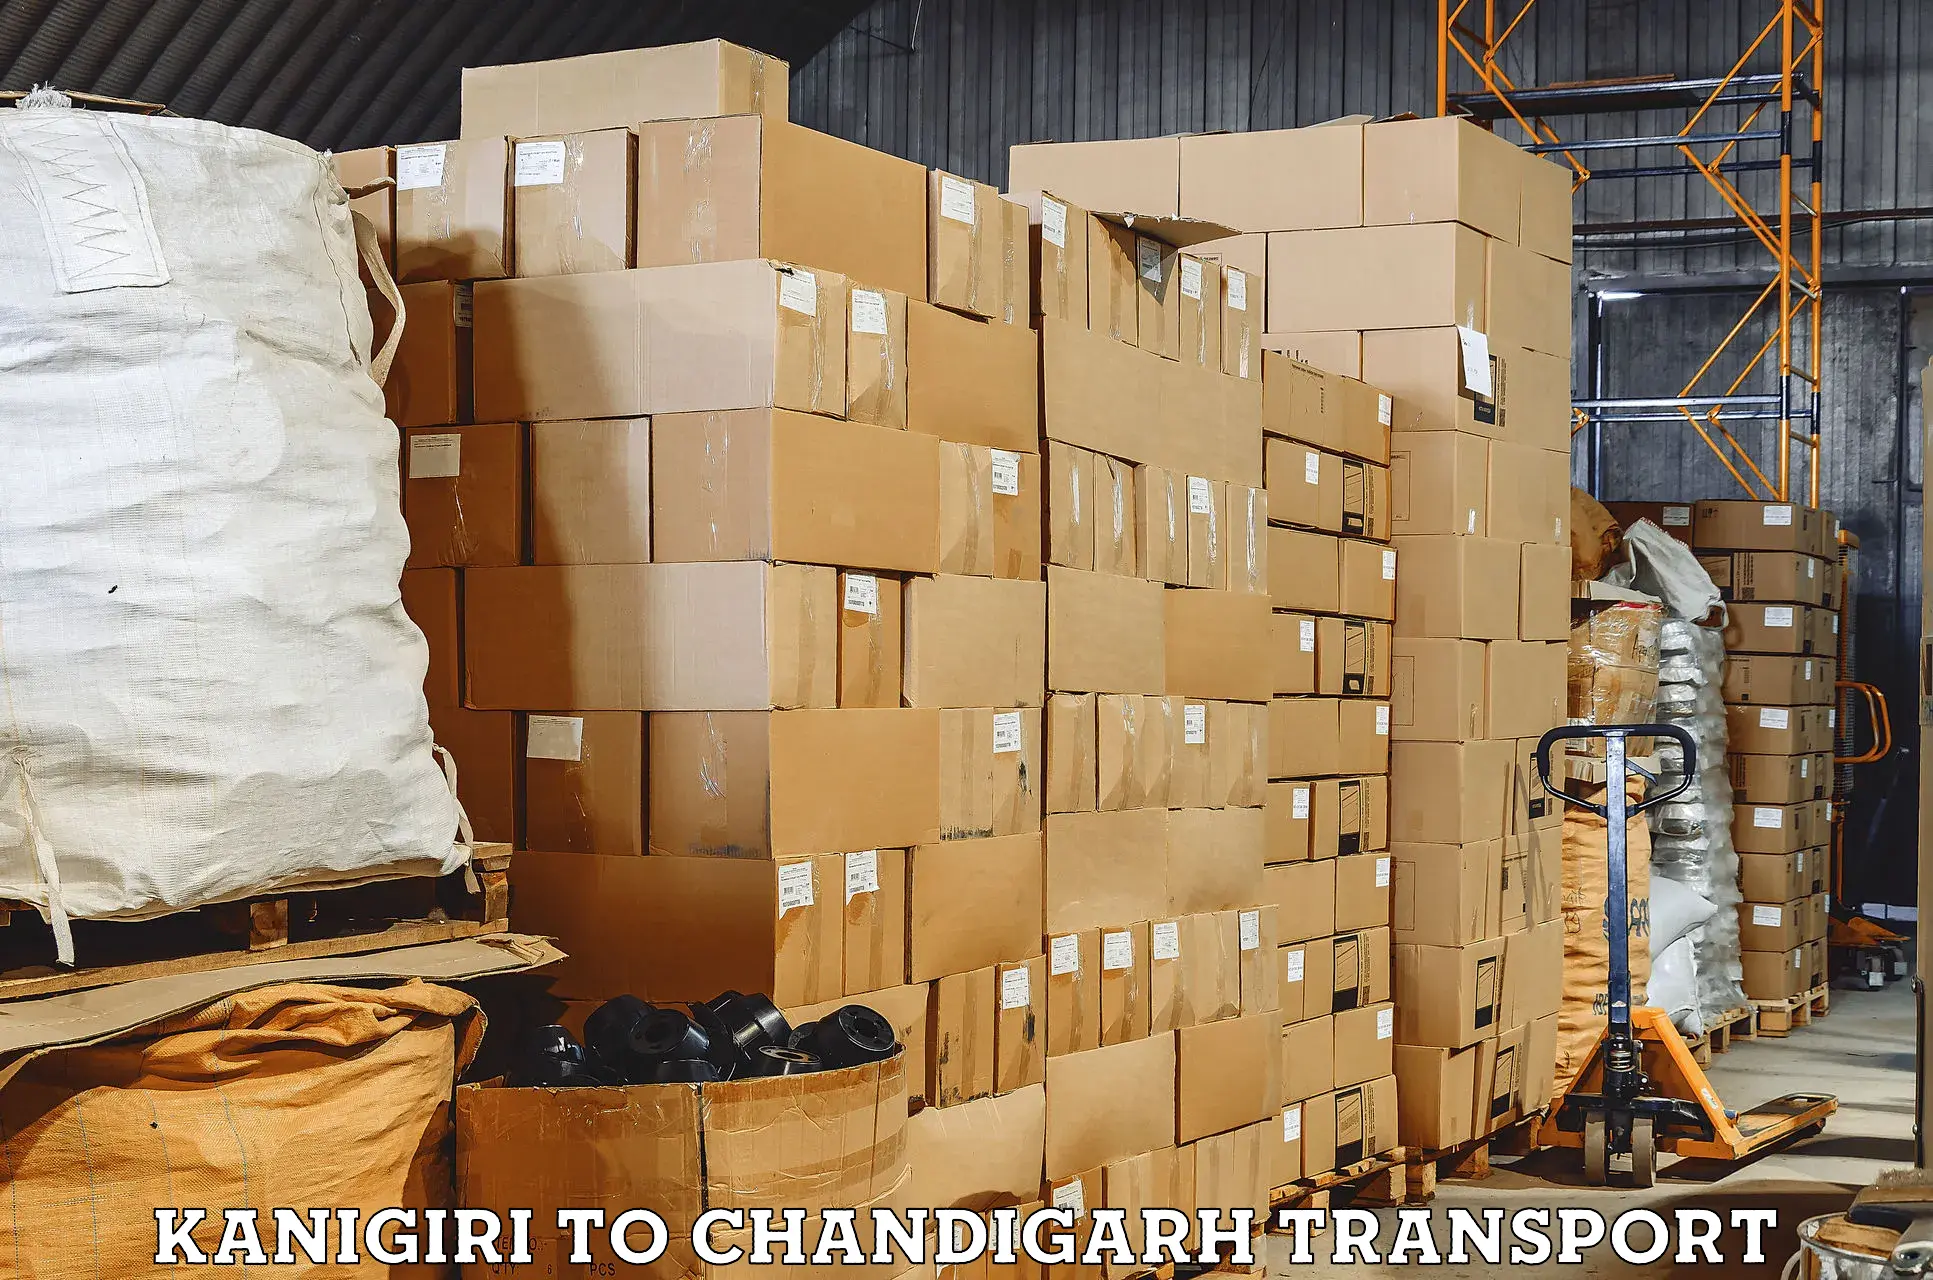 Daily transport service Kanigiri to Chandigarh